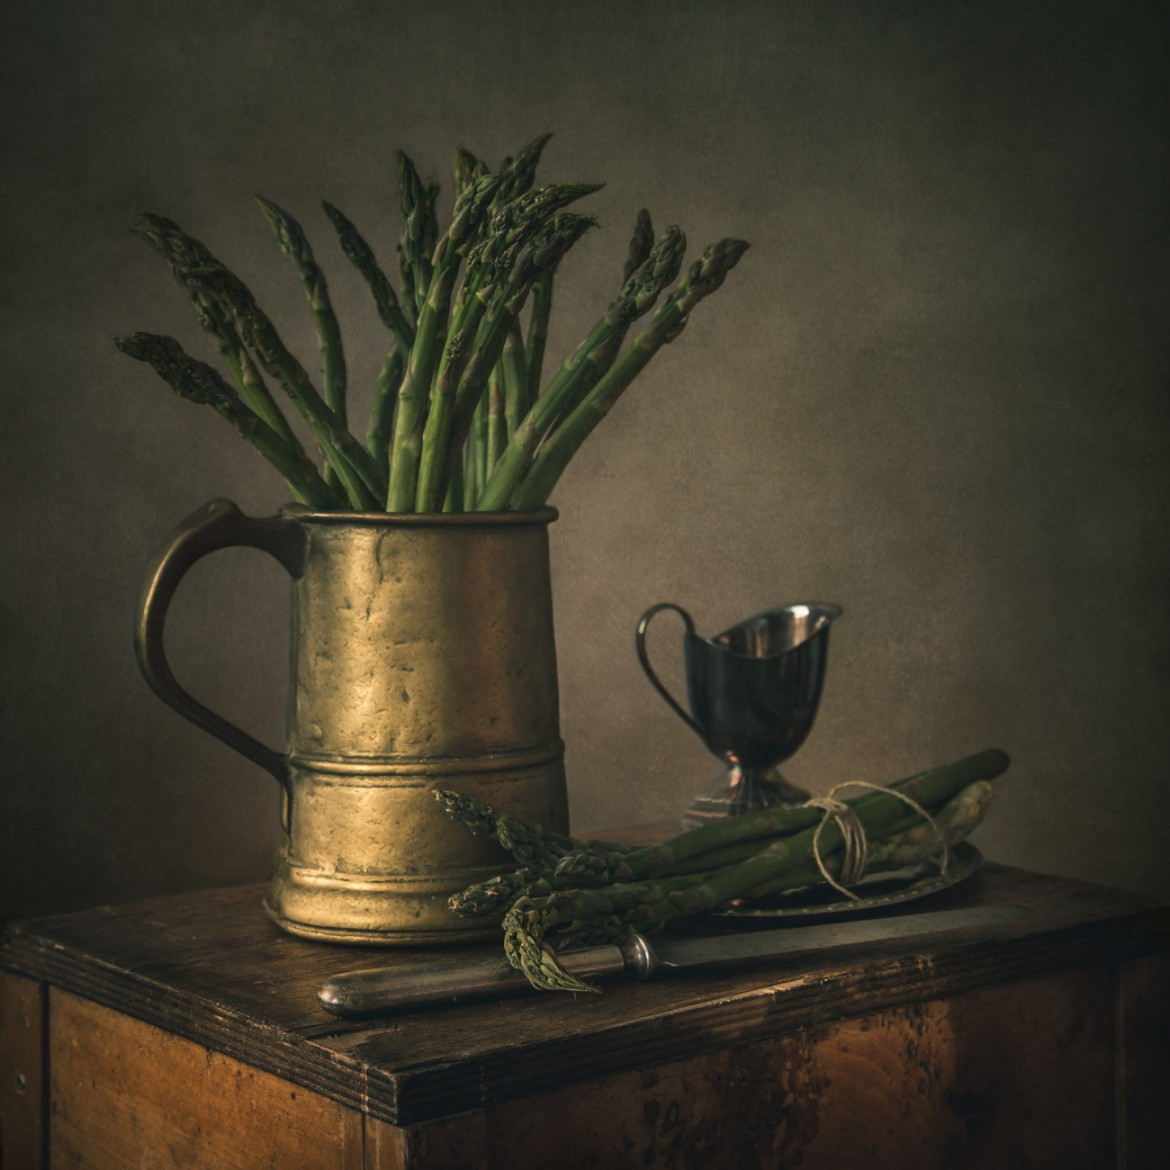 fot. Iwona Czubek, "Still Life With Asparagus", wyróżnienie w kat. Still Life / Siena Creative Photo Awards 2021